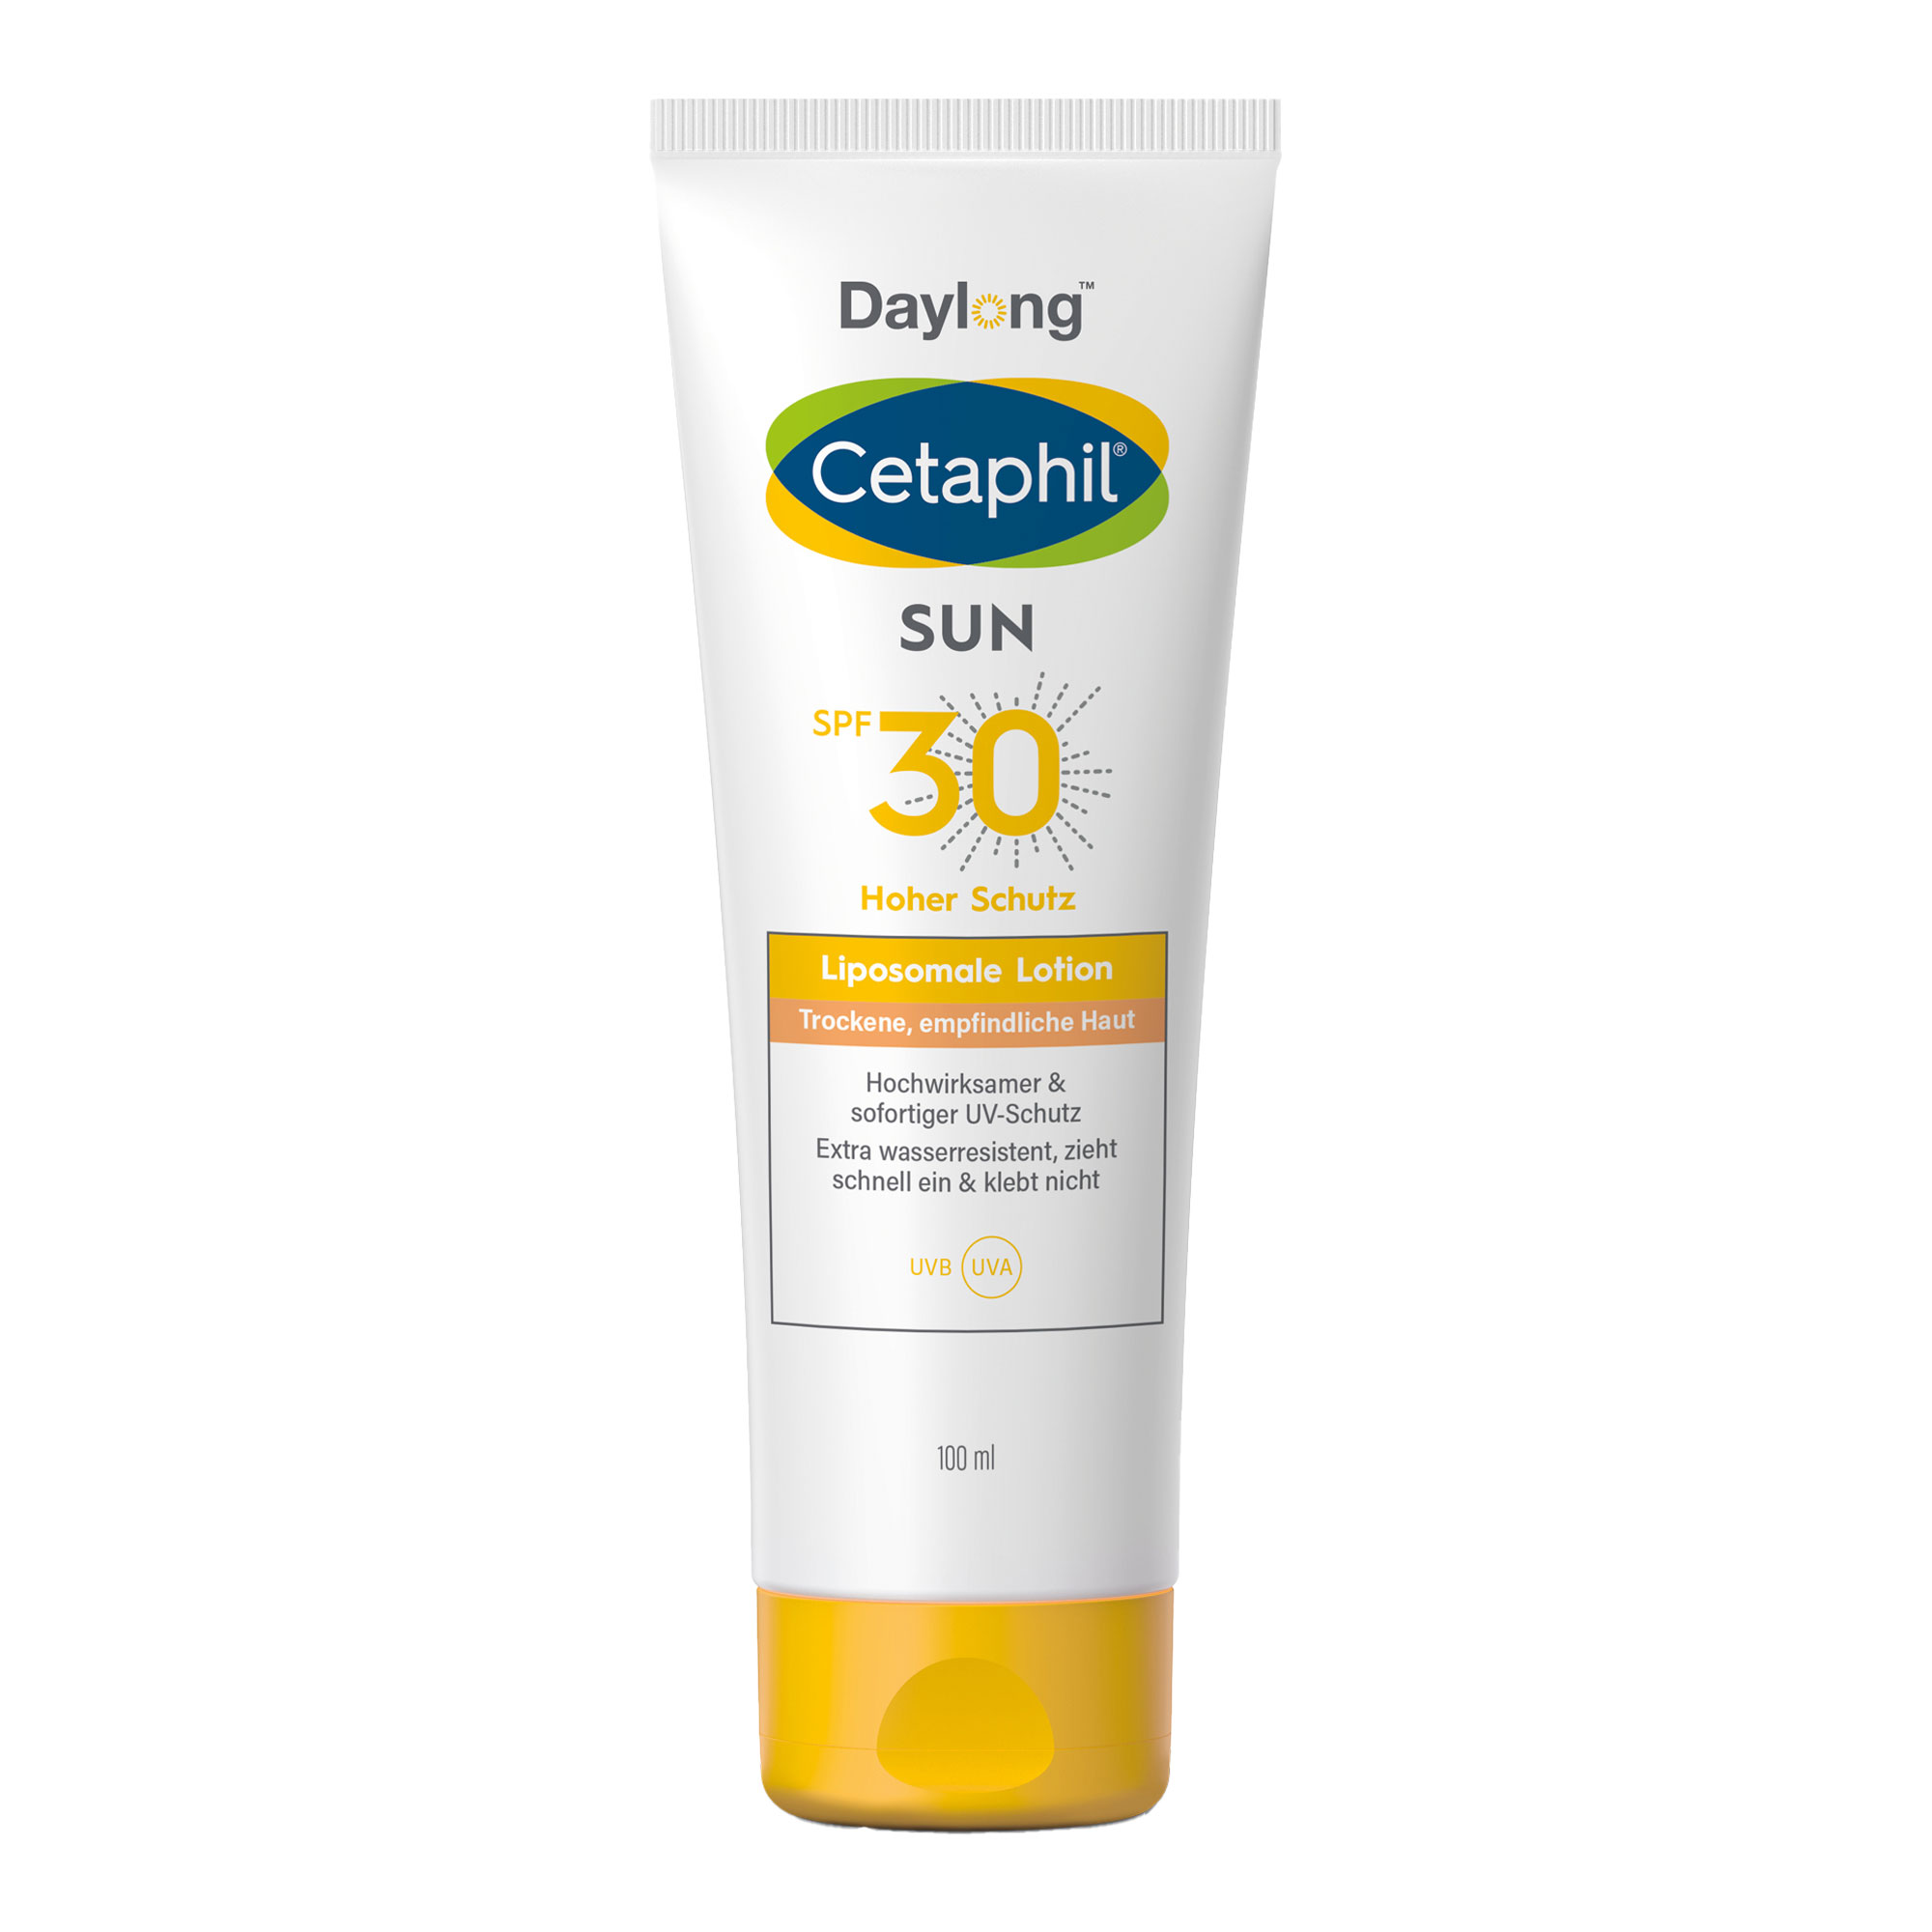 Feuchtigkeitsspendene Sonnenschutzlotion für trockene und empfindliche Haut.